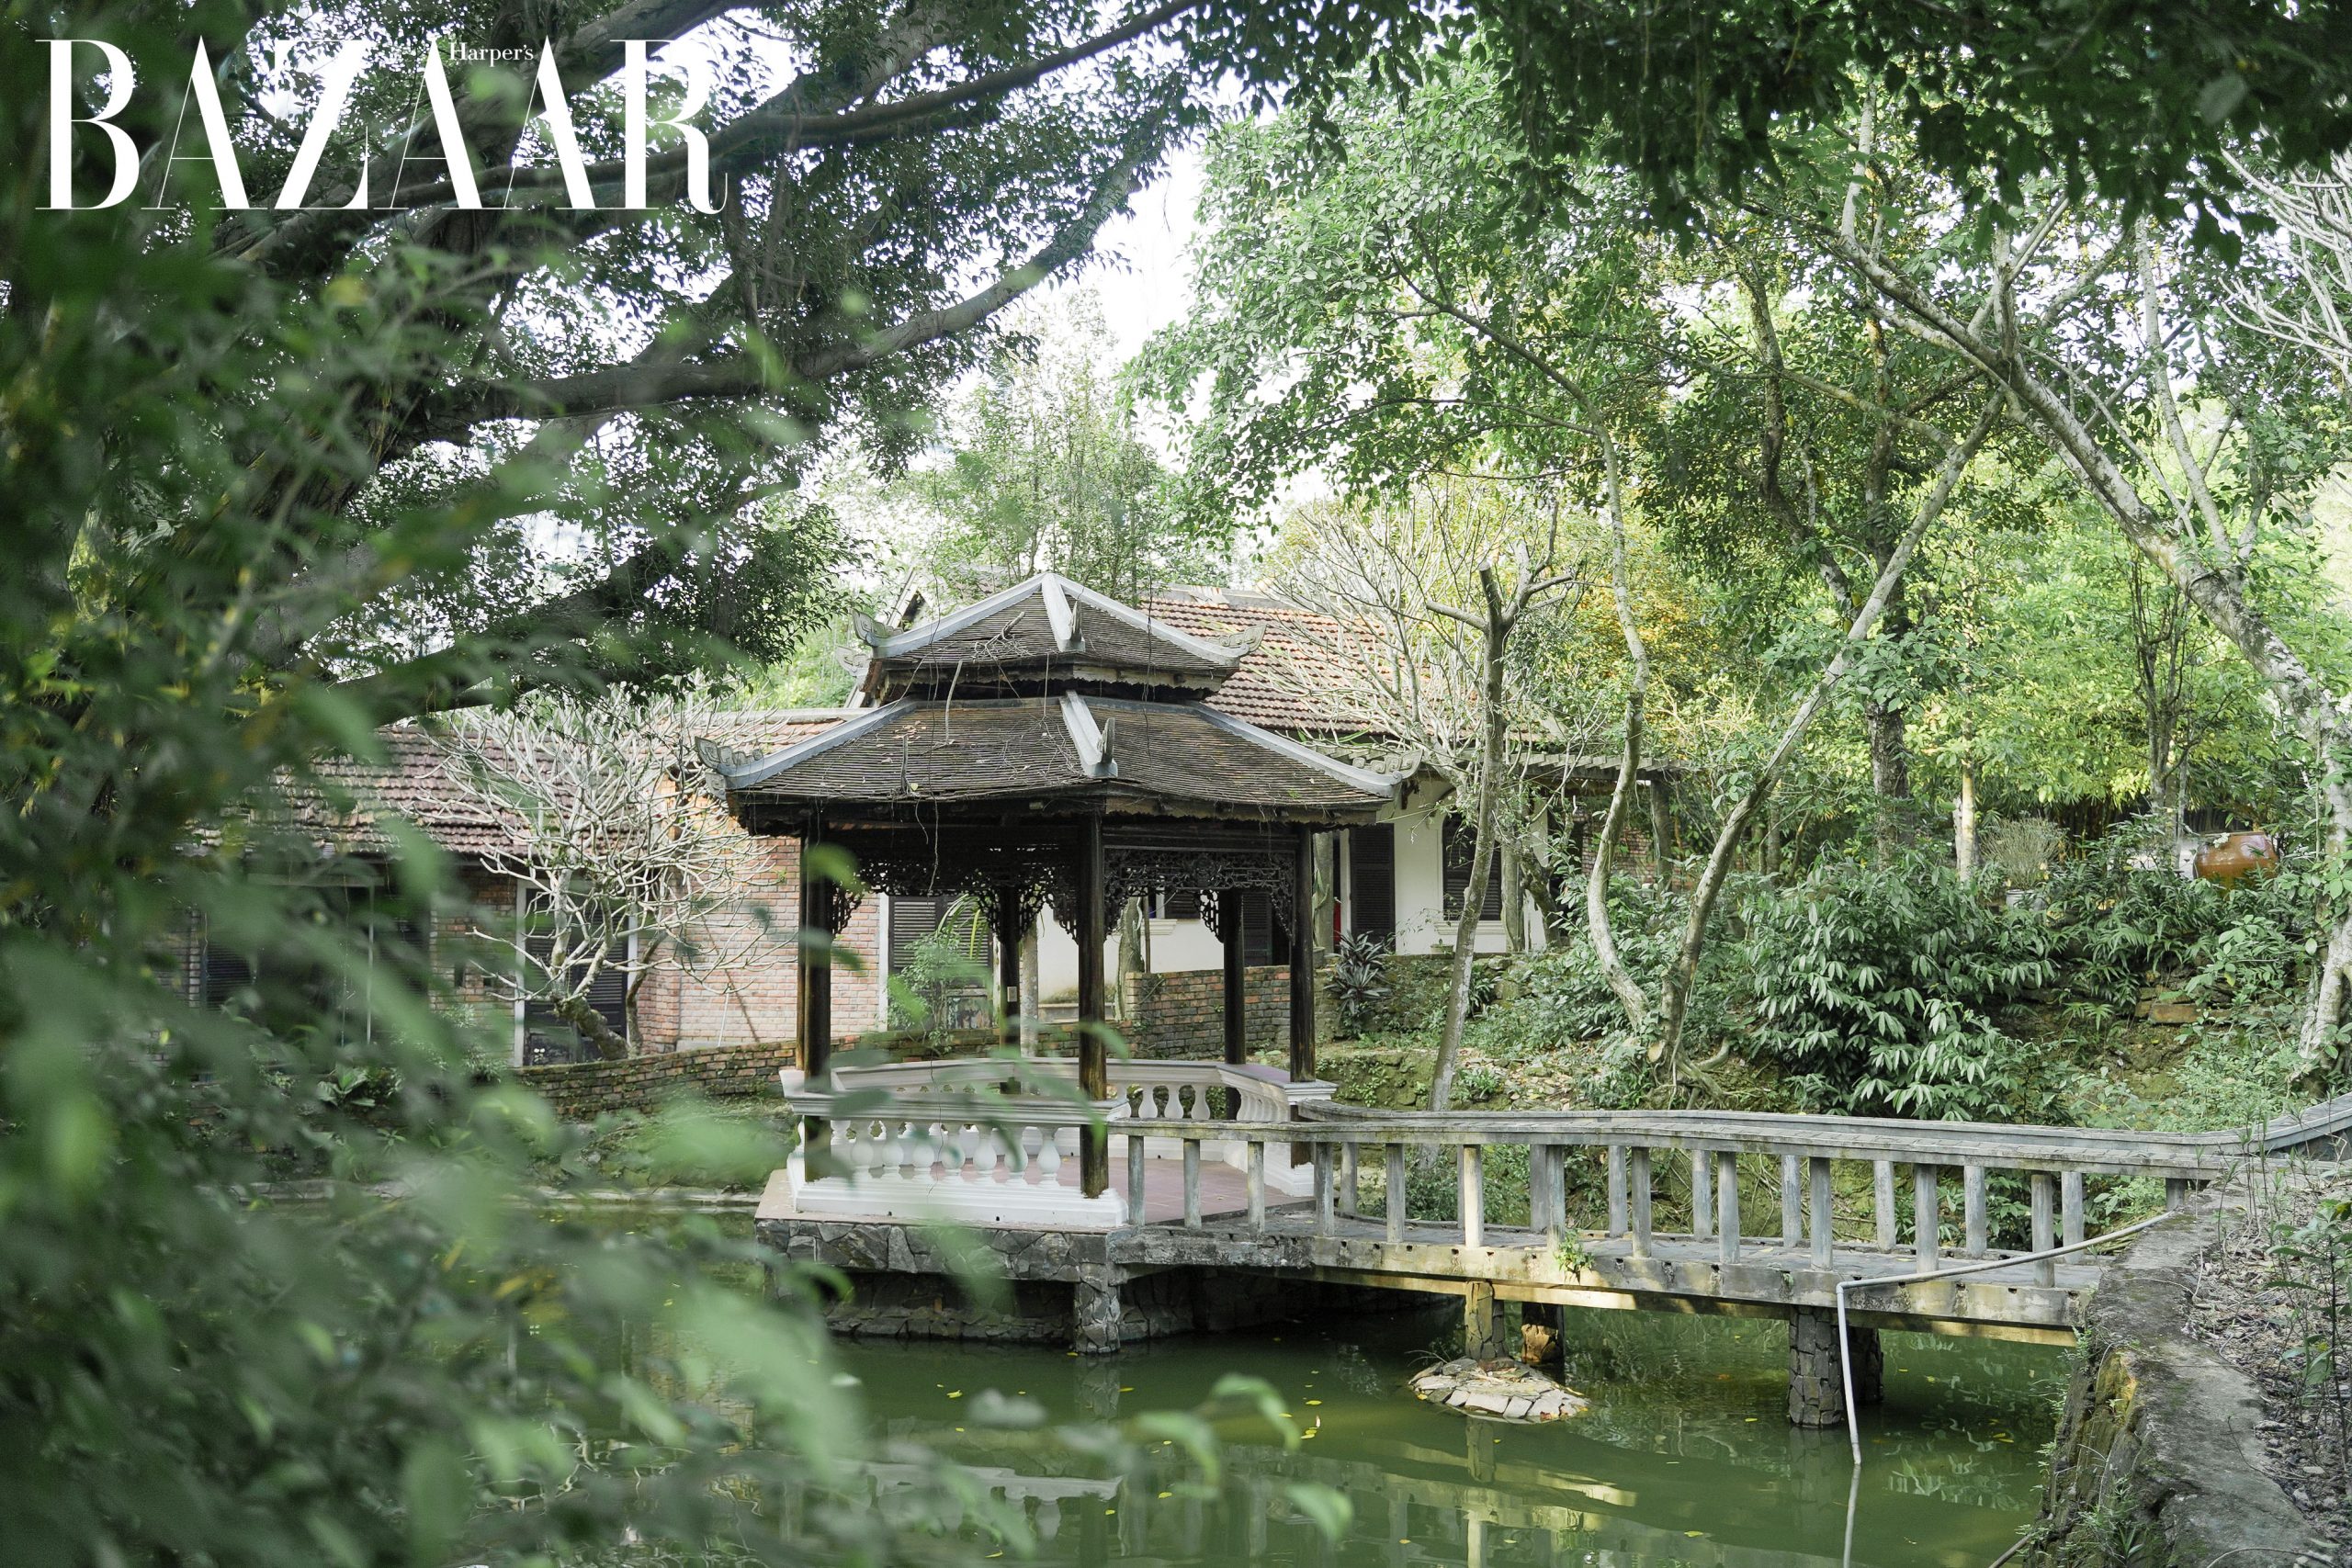 Harper’s Bazaar: A Great Hue Destination